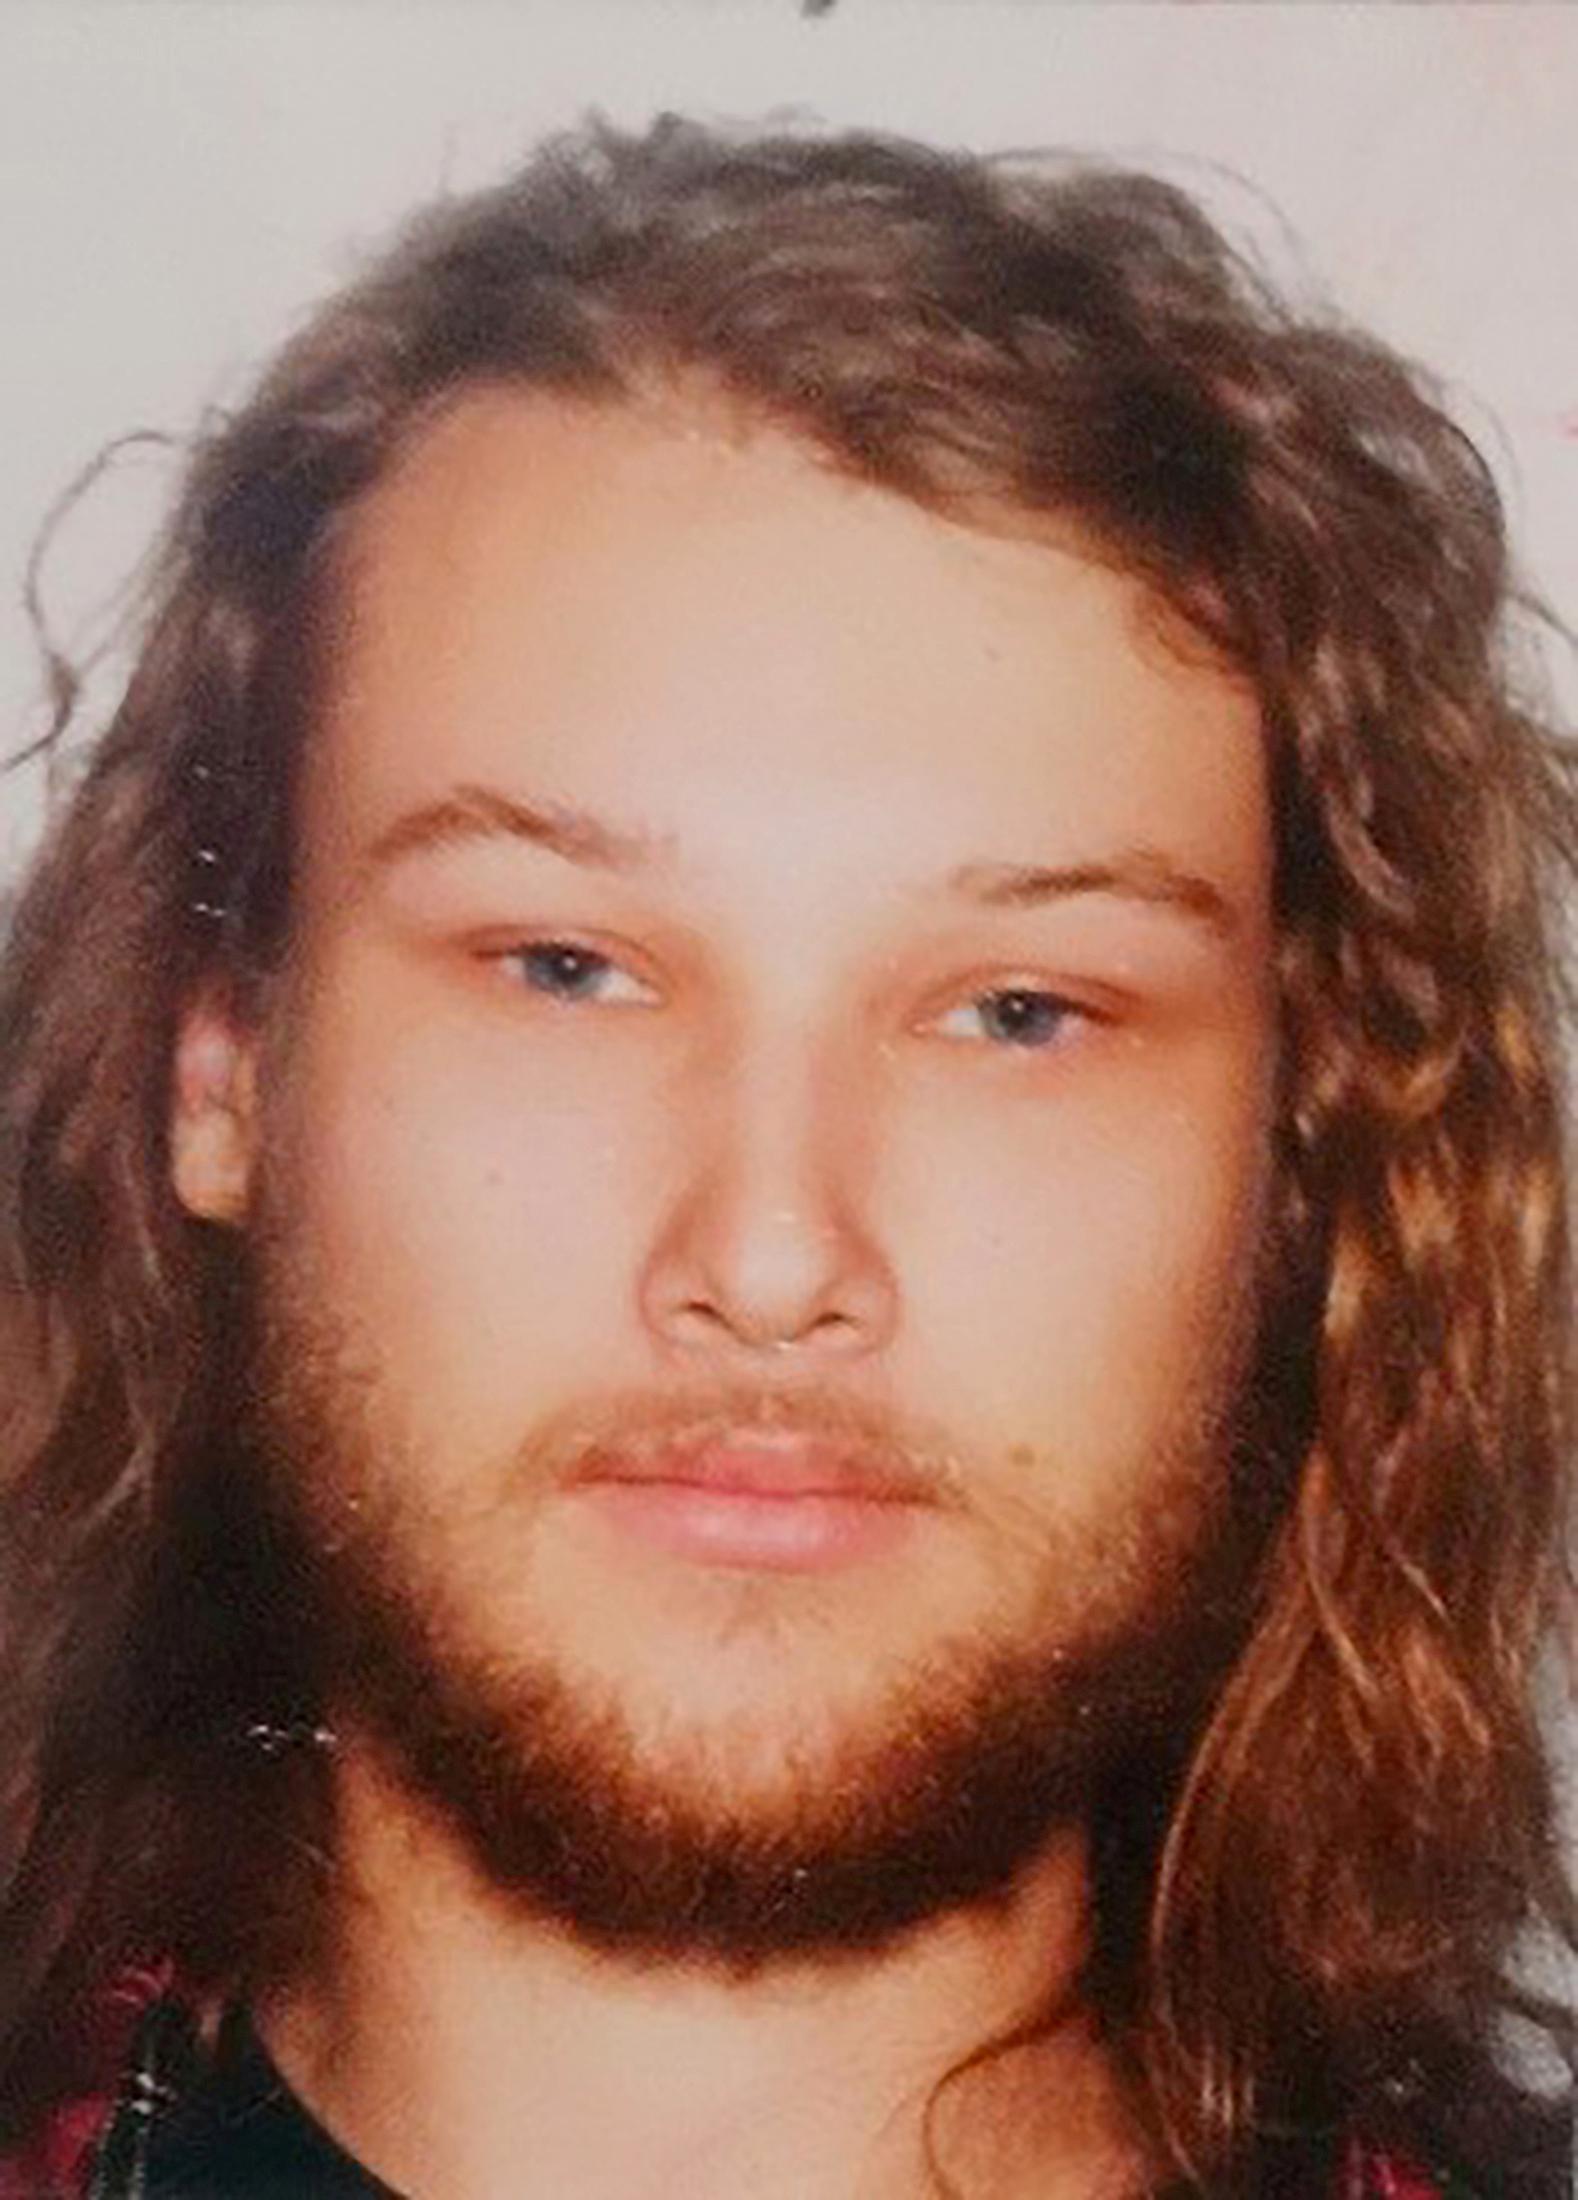 Lucas Fowler, 23, hittades ihjälskjuten den 15 juli. 